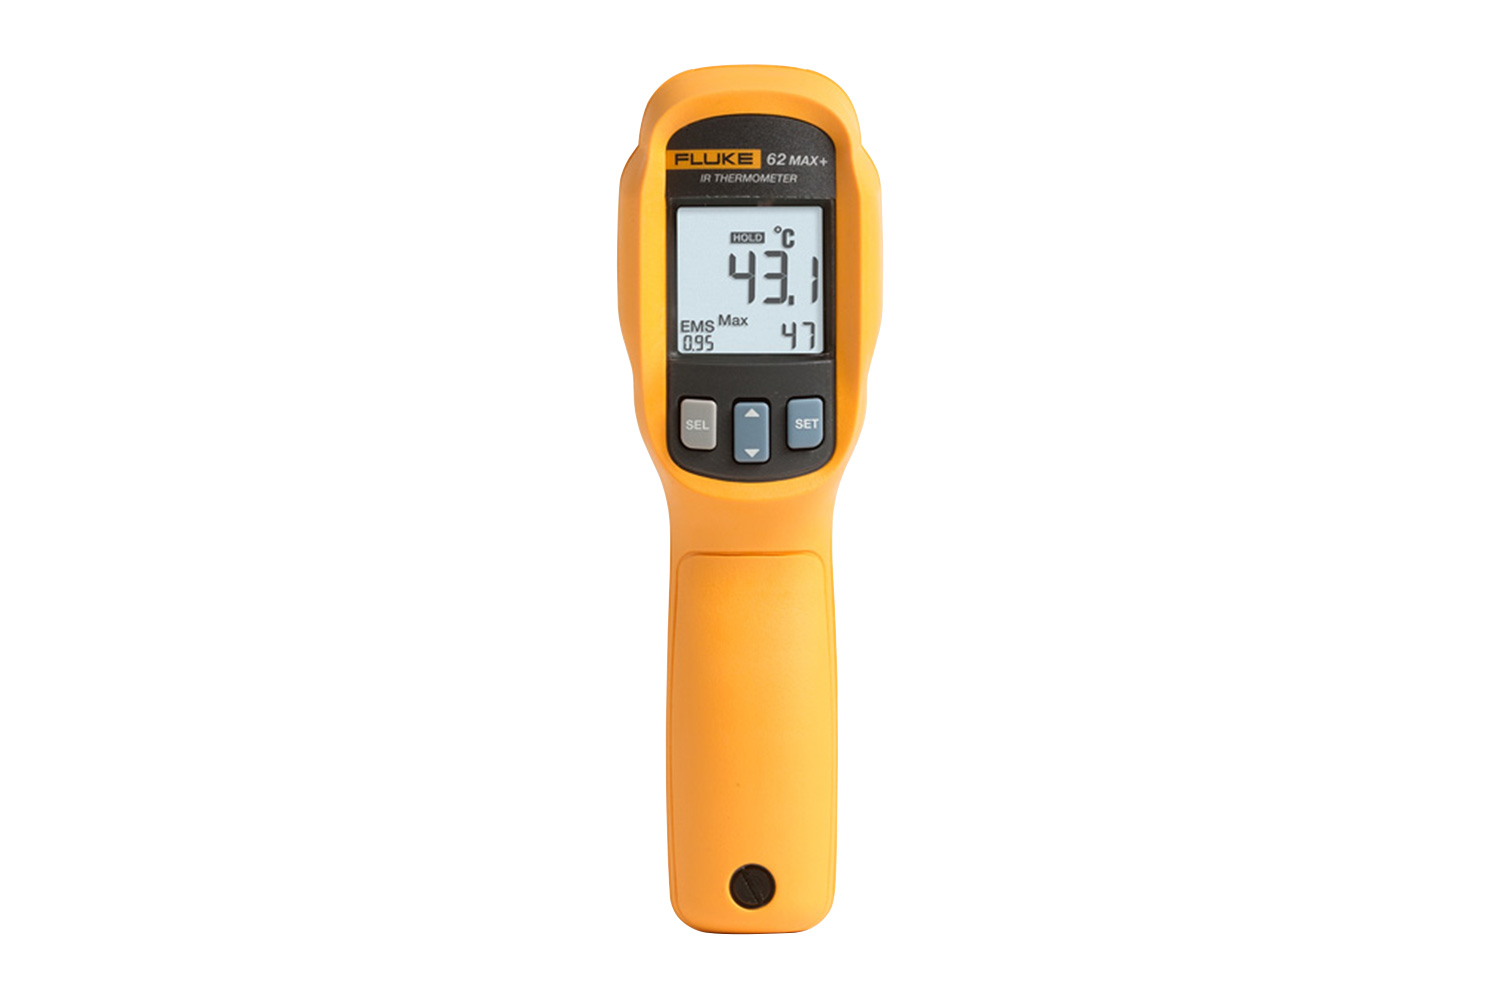 Fluke 417D+62MAX+ KIT Laser Distance Meter/Infrared Thermometer Combo Kit